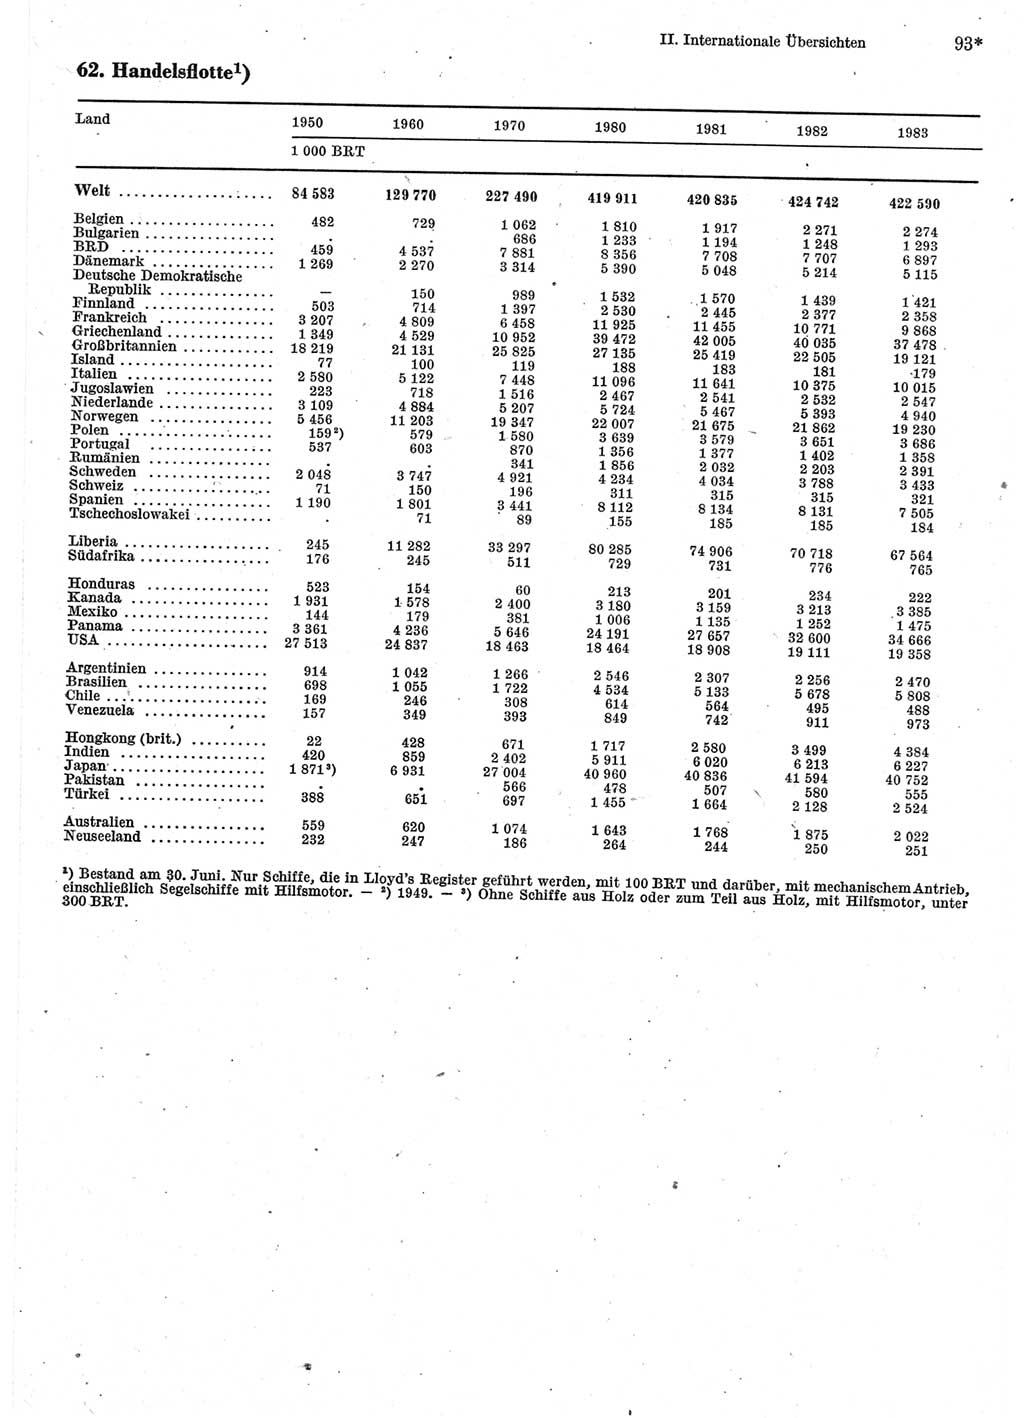 Statistisches Jahrbuch der Deutschen Demokratischen Republik (DDR) 1985, Seite 93 (Stat. Jb. DDR 1985, S. 93)